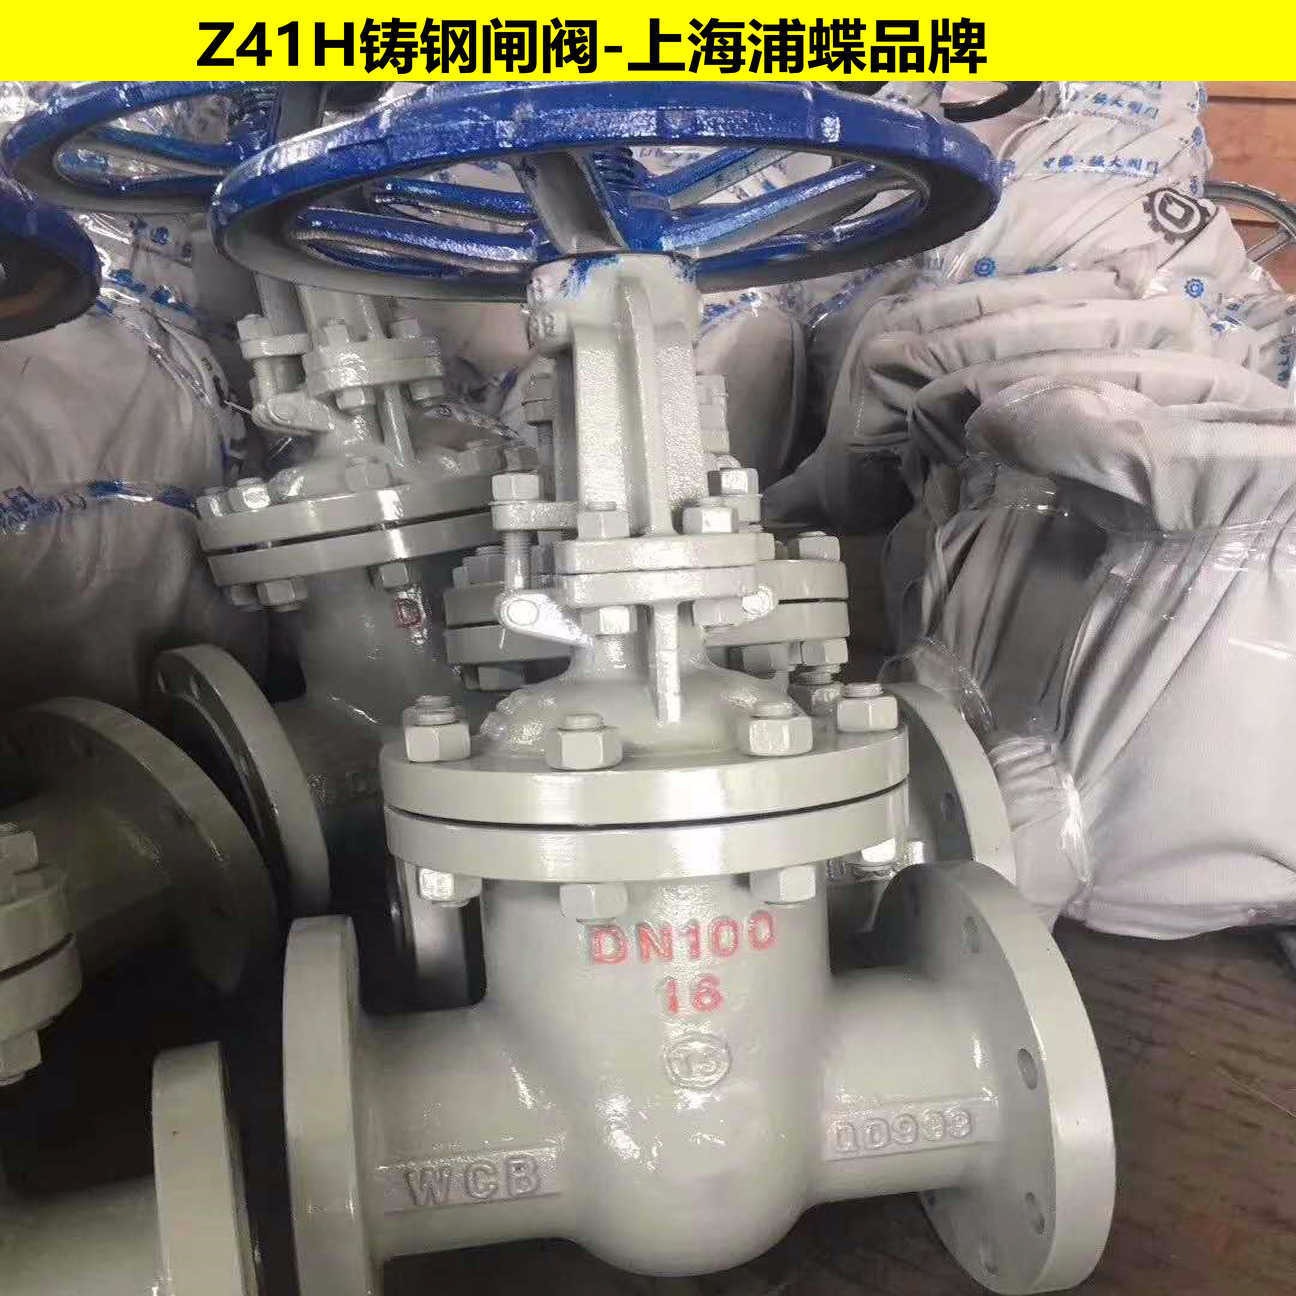 手动铸钢法兰闸阀Z41H-16C 上海浦蝶品牌图片